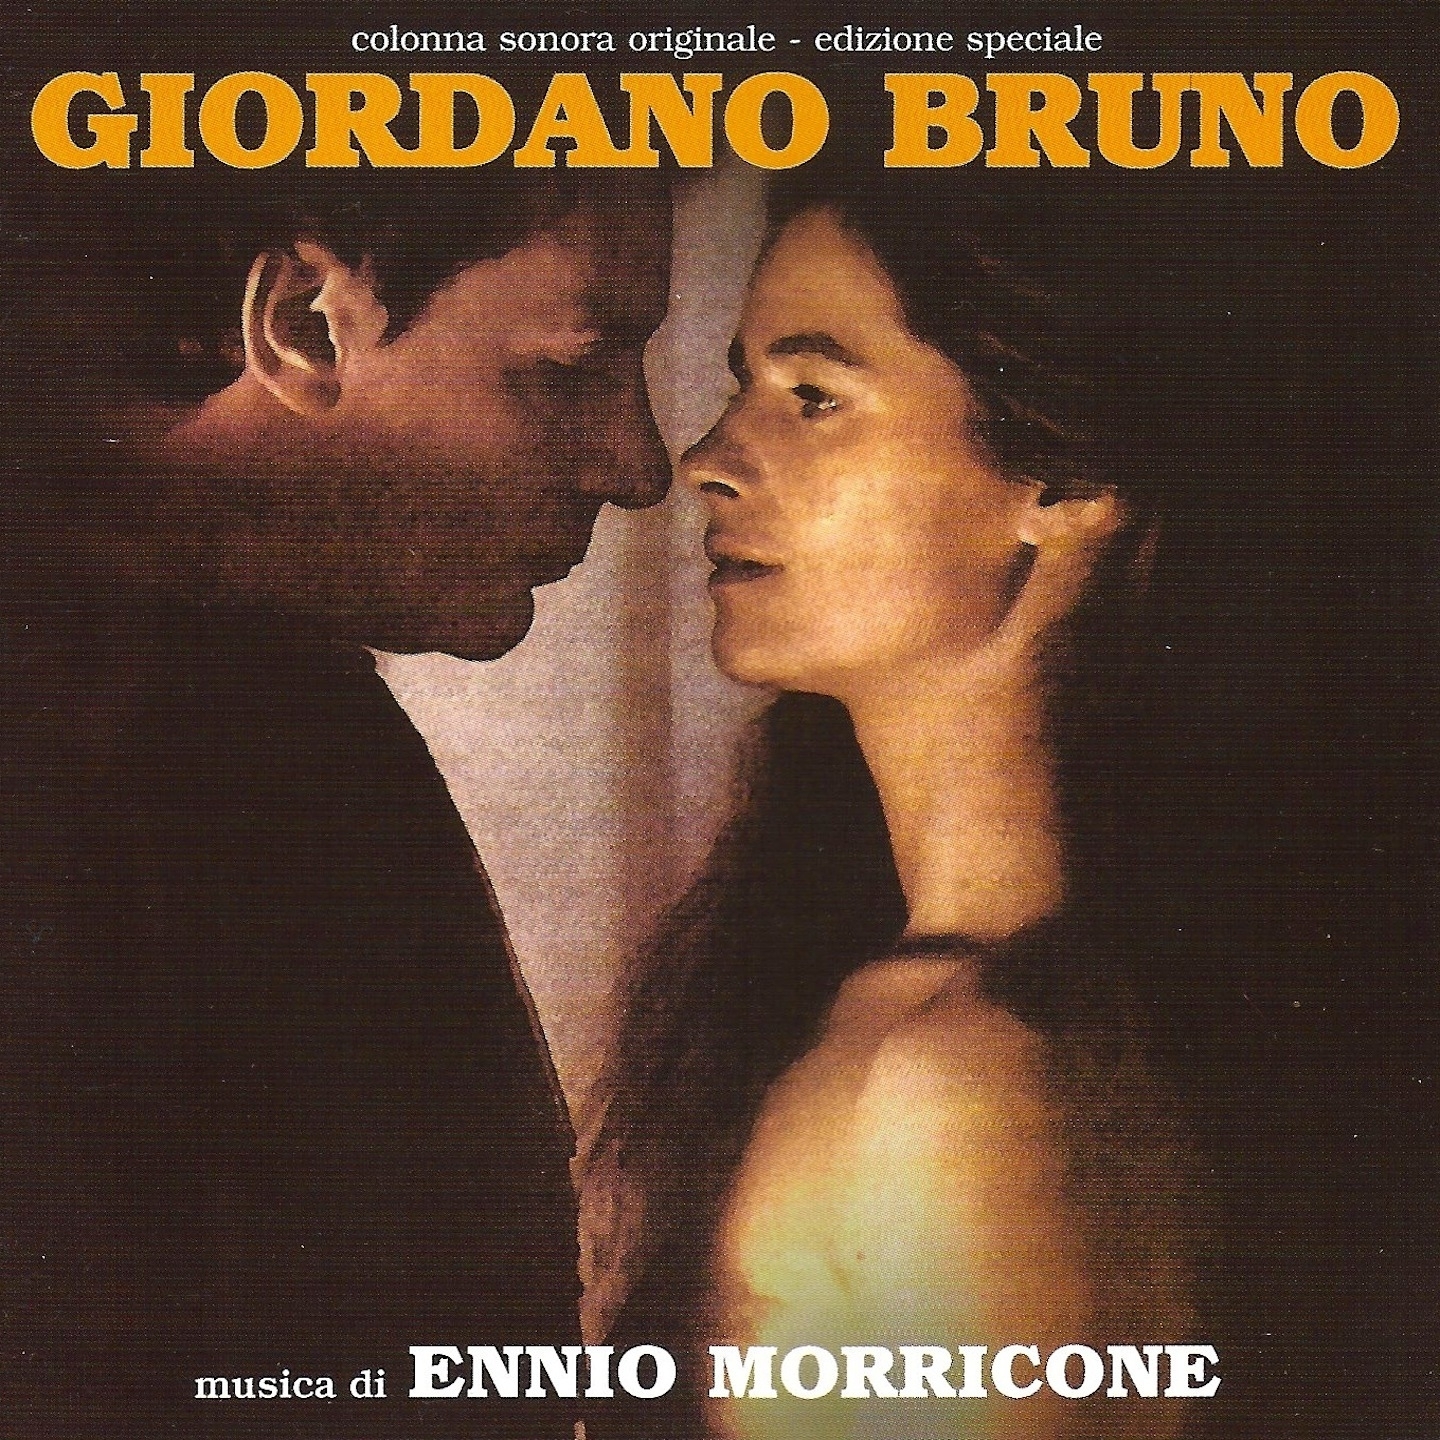 Giordano bruno, No. 5 - finale